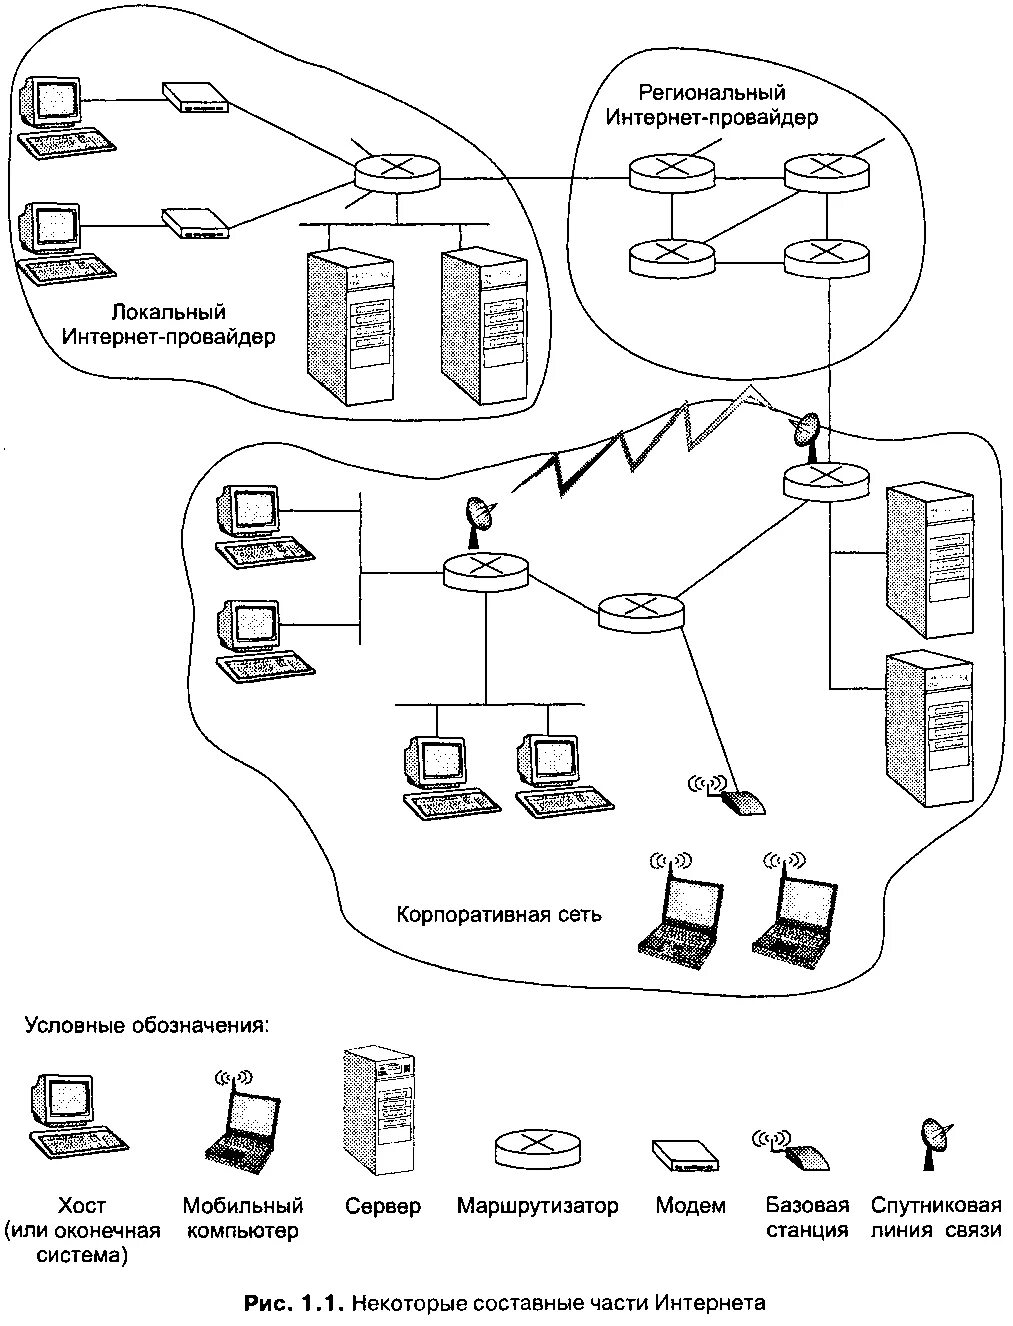 Структурная схема сети интернет. Структурная схема интернета. Схема сети интернет провайдера. Как устроена сеть интернет схема.